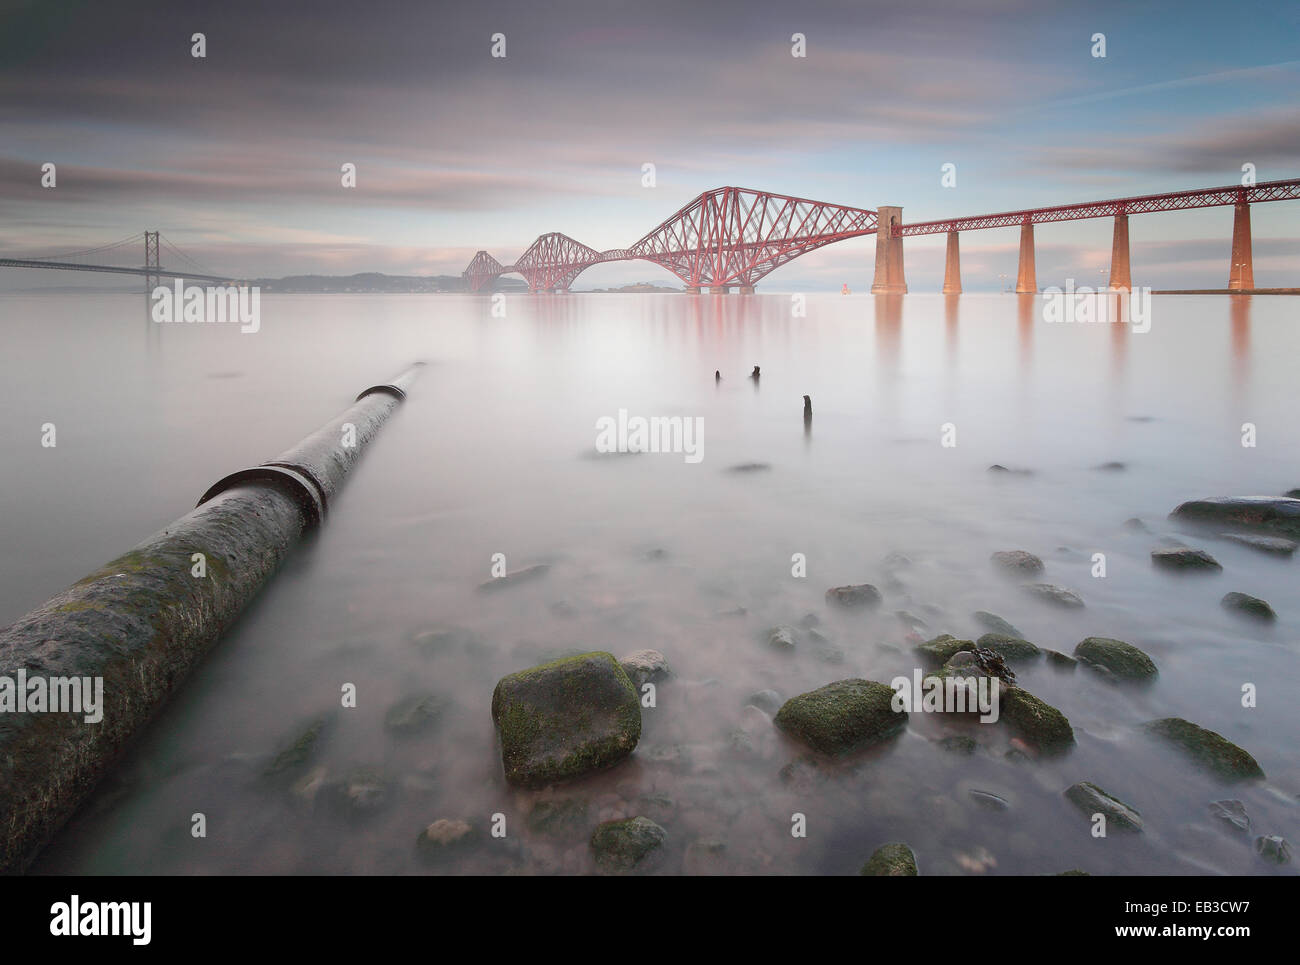 Reino Unido, Escocia, Queensferry, puente ferroviario de Forth vistos desde el otro lado de un mar tranquilo, con una tubería submarina ejecutándose en primer plano Foto de stock